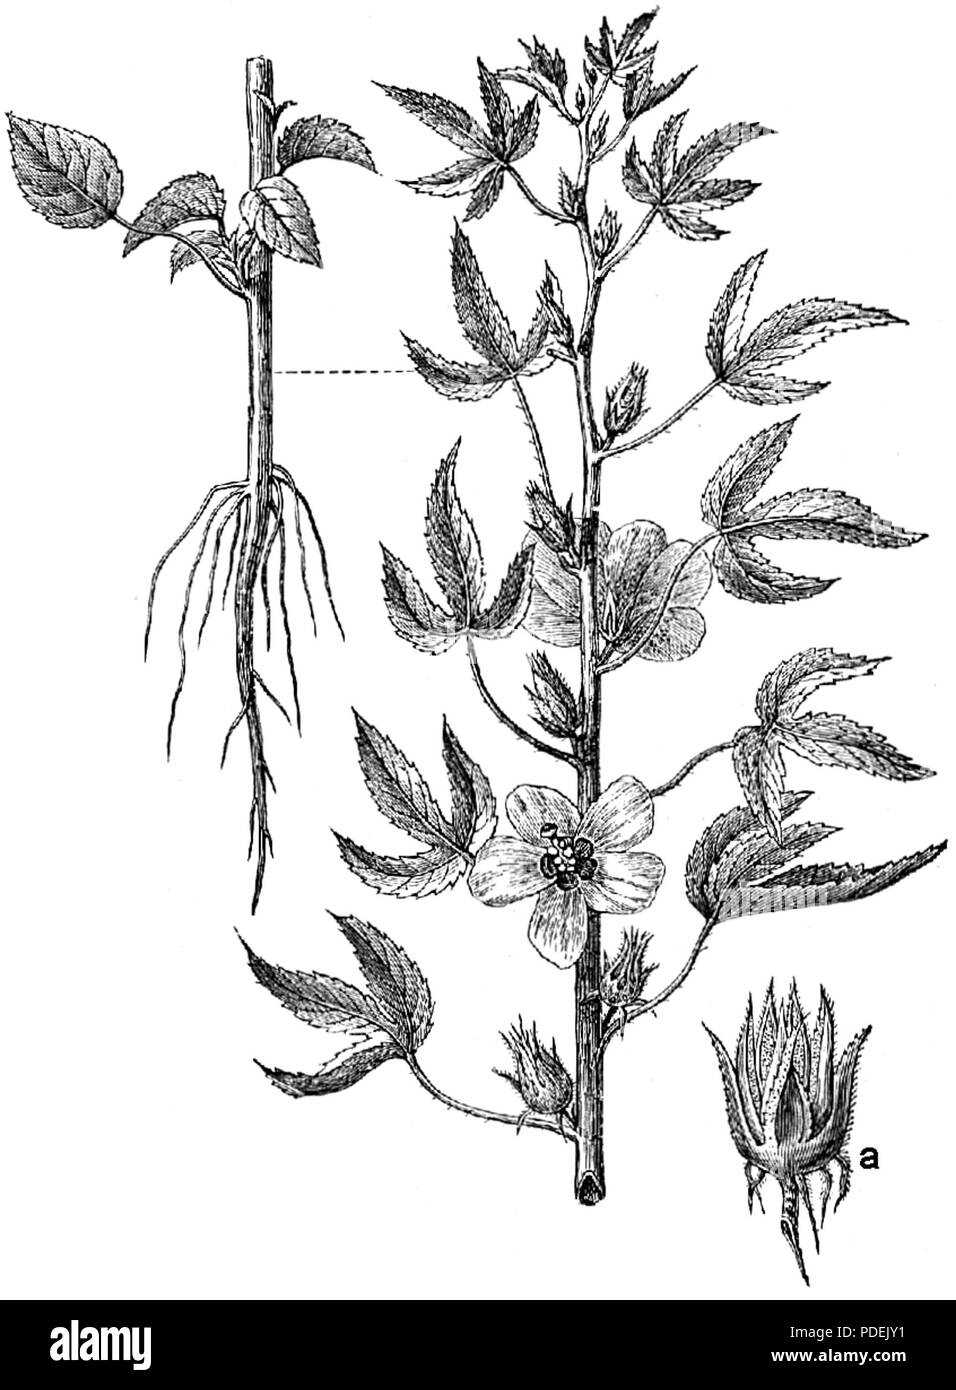 77 Beklädnadsväxter, Hibiscus cannabinus, Nordisk familjebok Stock Photo